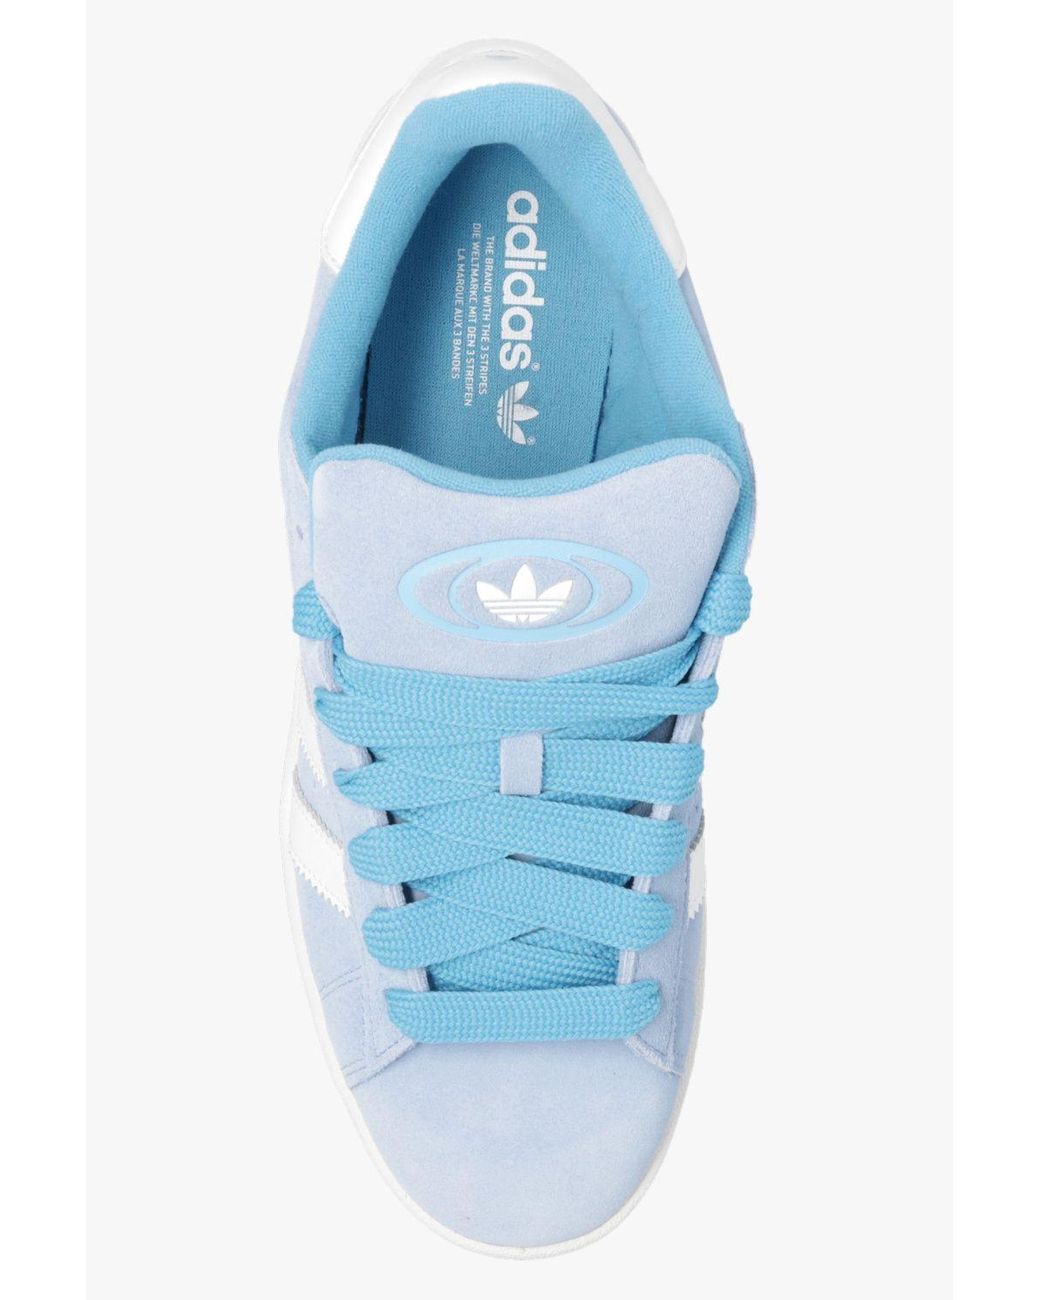 adidas Originals: Blue Campus 80s Sneakers | SSENSE